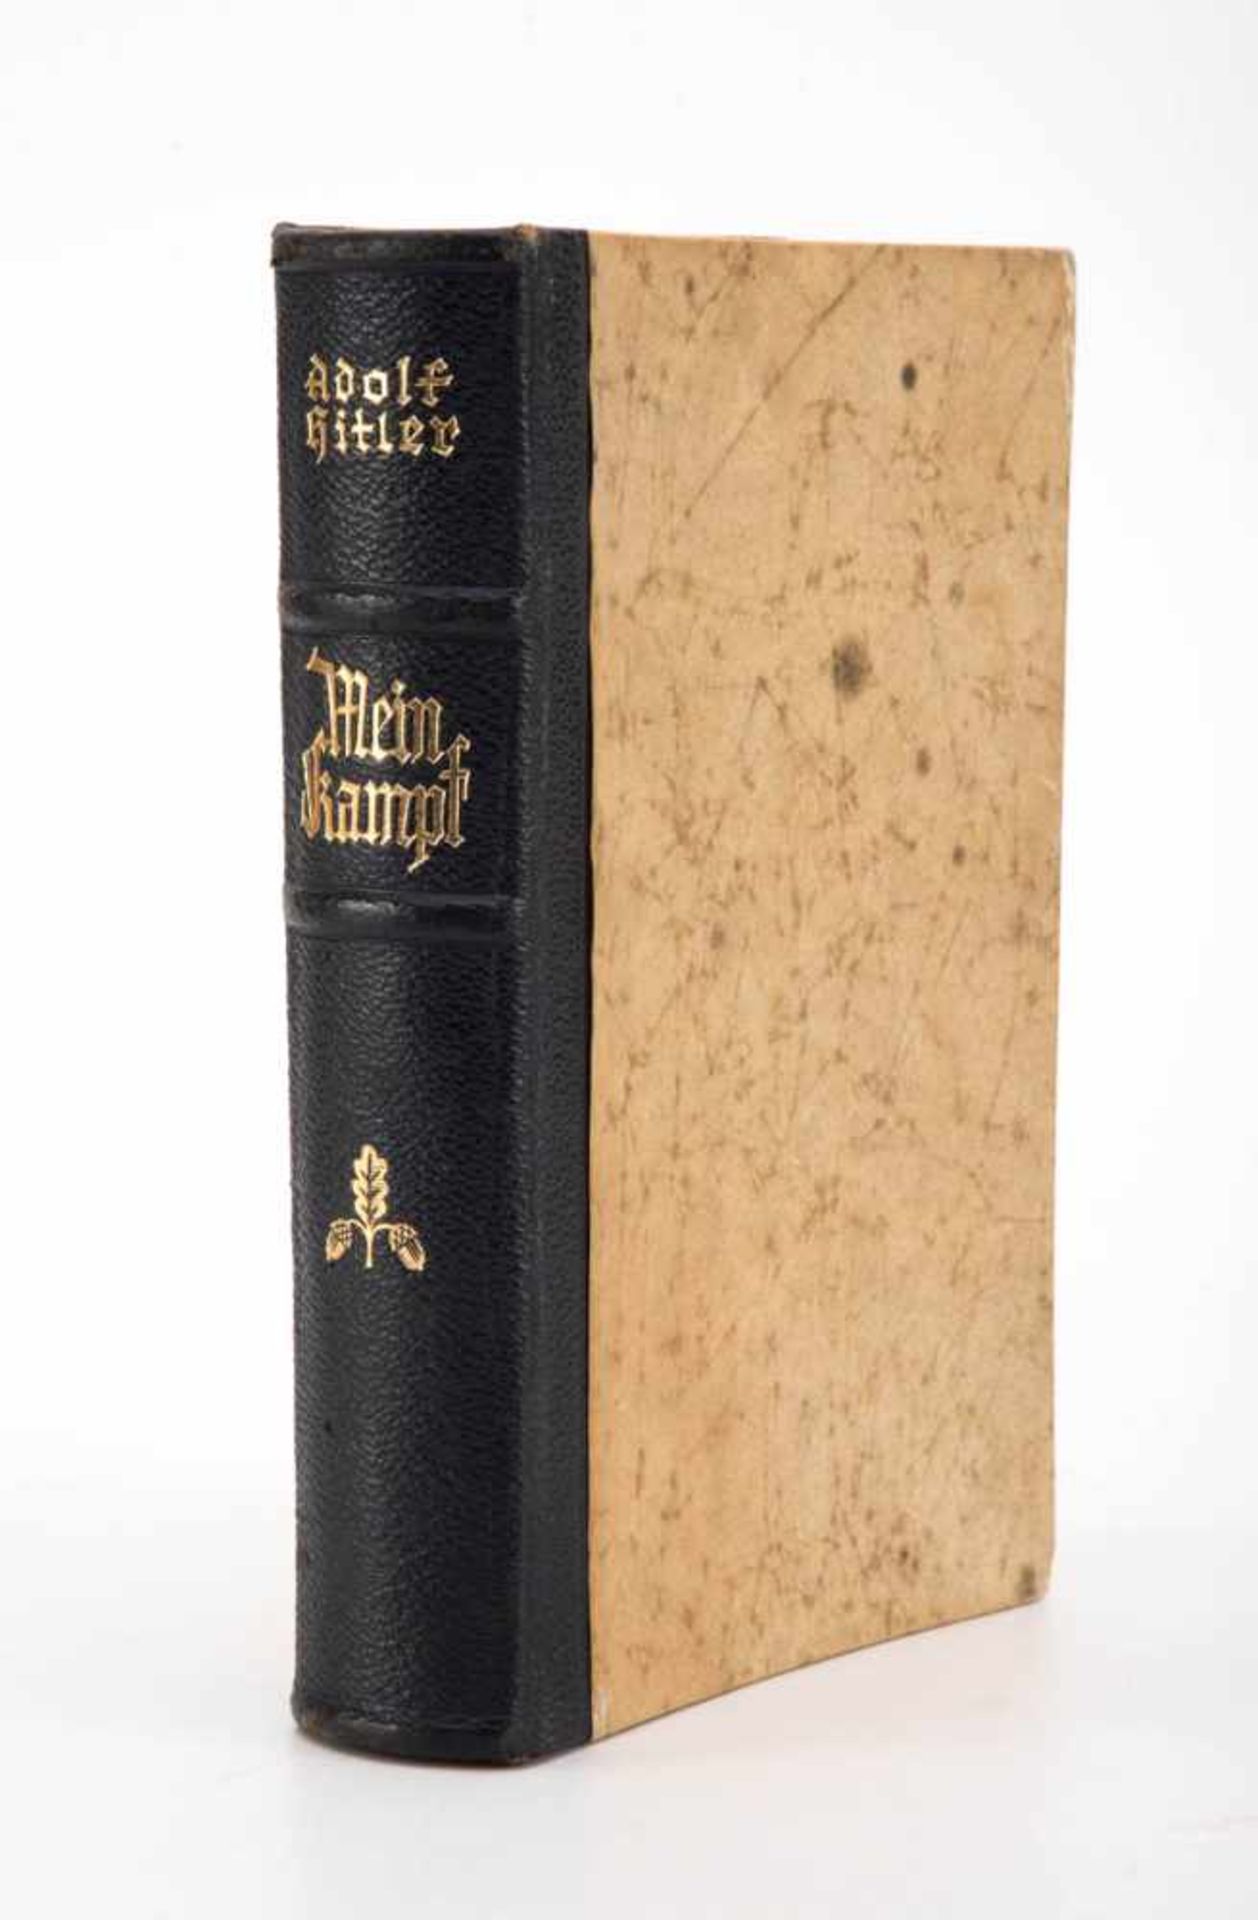 Mein Kampf Adolf Hitler, 360./364. Auflage von 1938. Einige Seiten eingerissen.